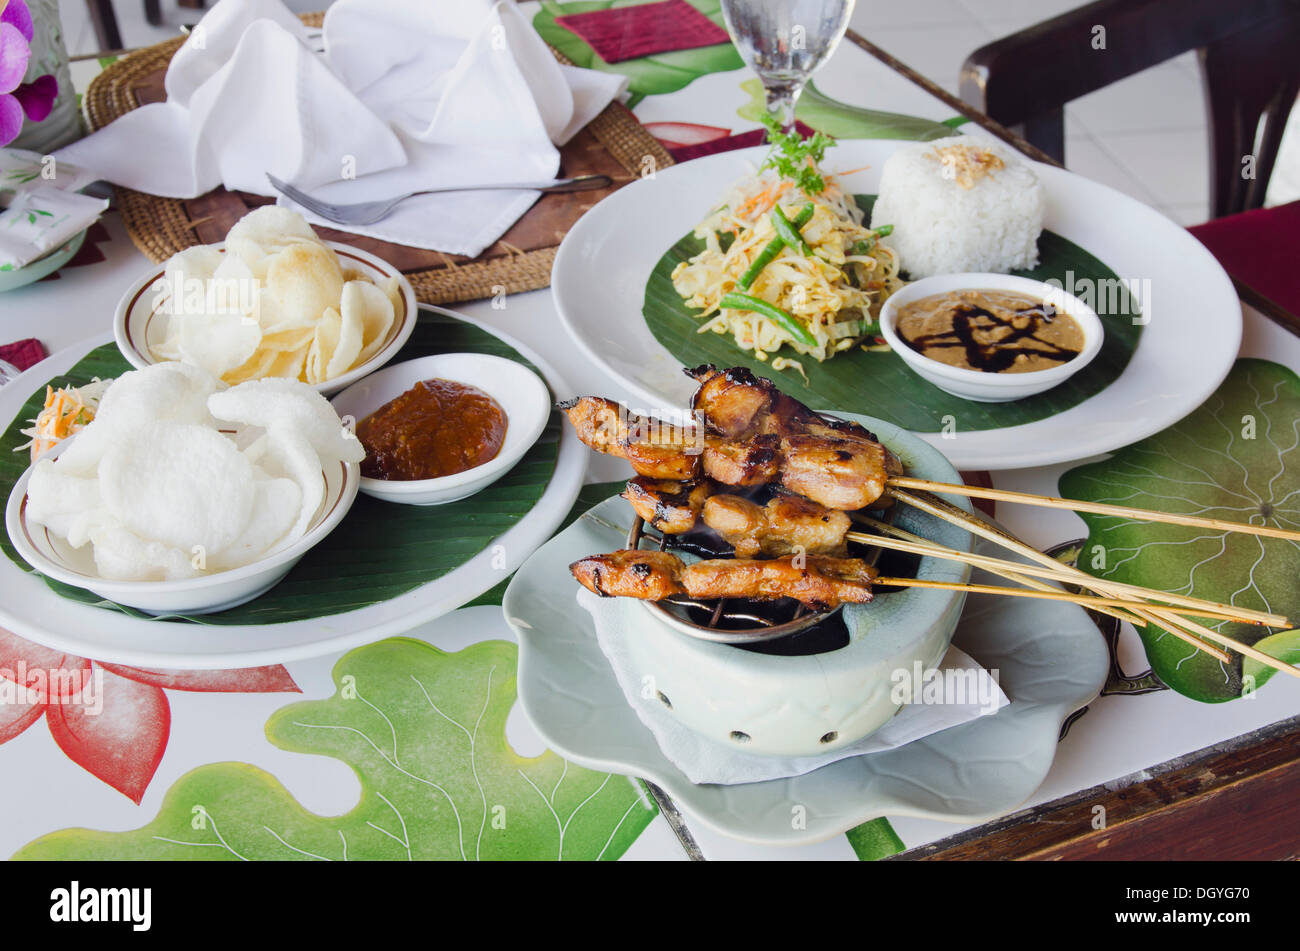 Pollo satay, spiedini di pollo con riso, cucina indonesiana, presso un ristorante, Candi Dasa, Bali, Indonesia Foto Stock